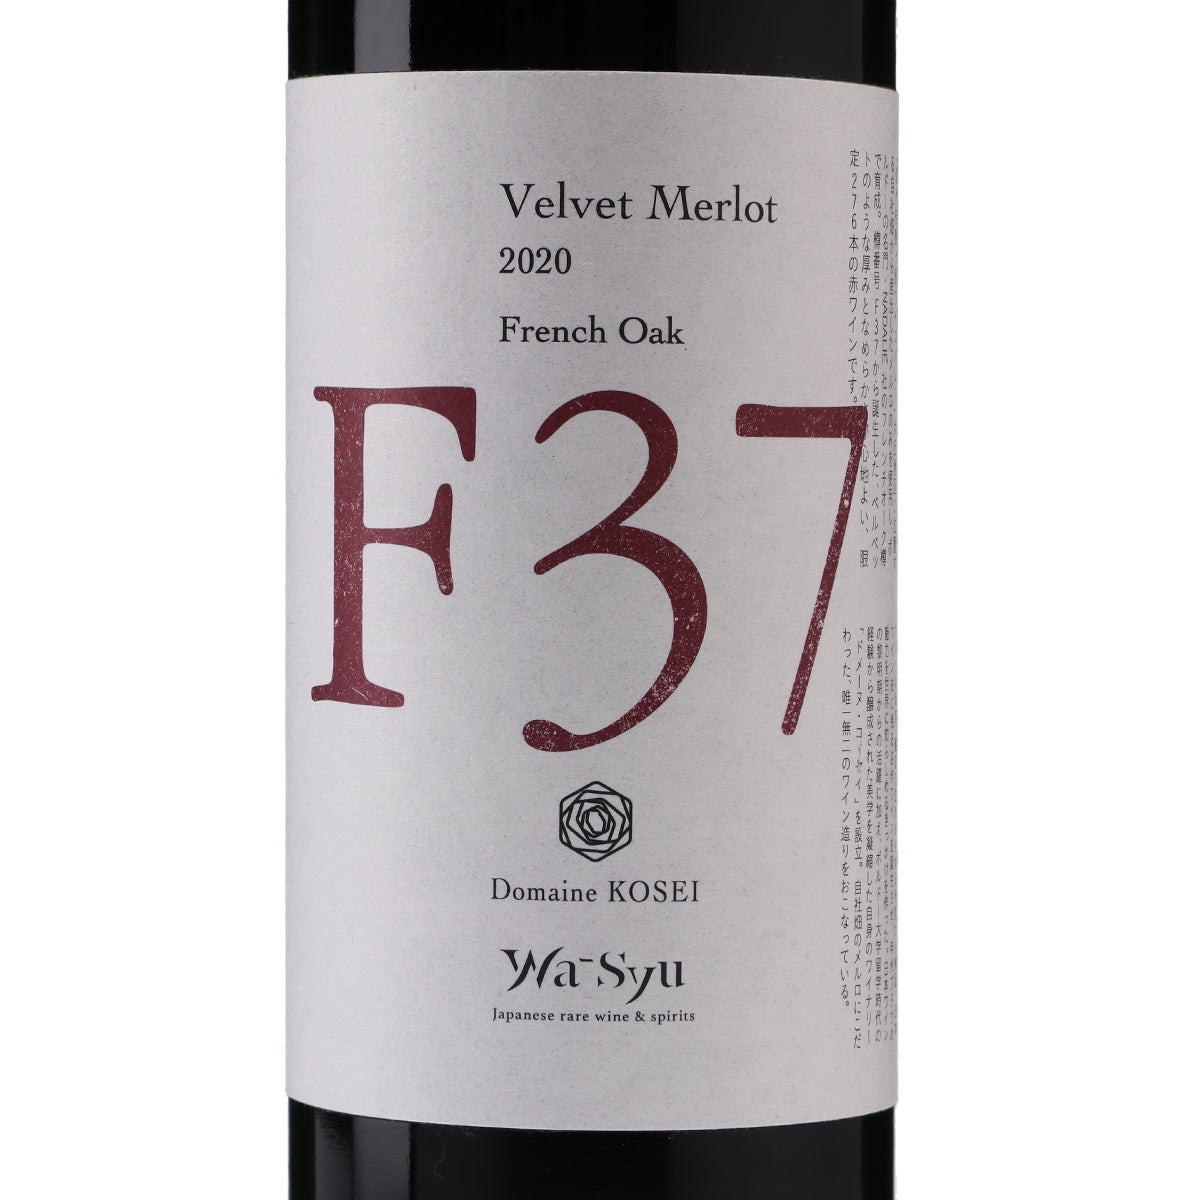 【ドメーヌ・コーセイ×wa-syu】Velvet Merlot F37 2020 French Oak